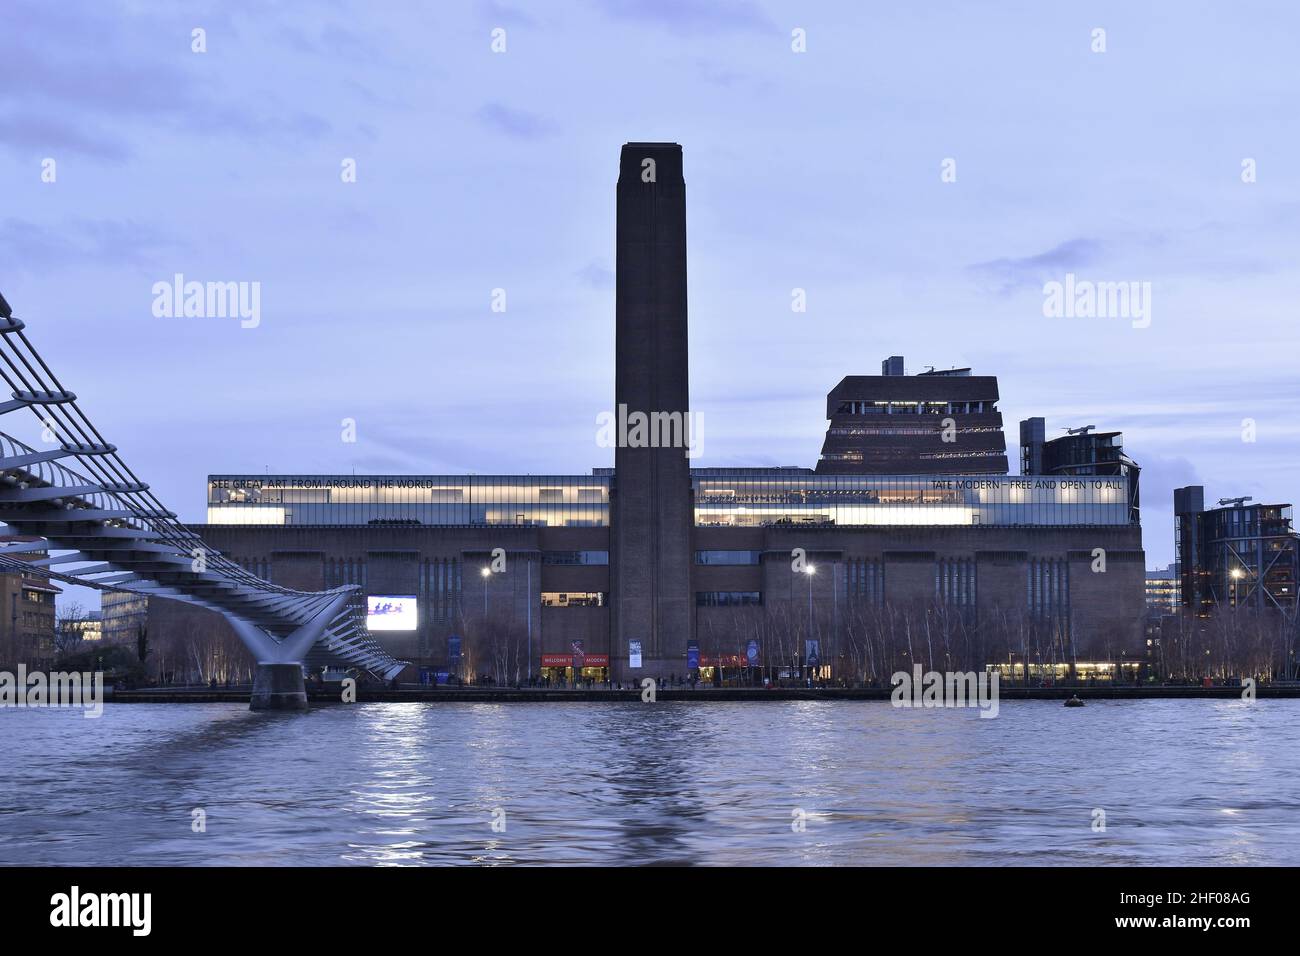 Tate Modern Art Galley edificio sulla riva sud del Tamigi, vista sul tramonto dalla riva nord, Londra UK. Foto Stock